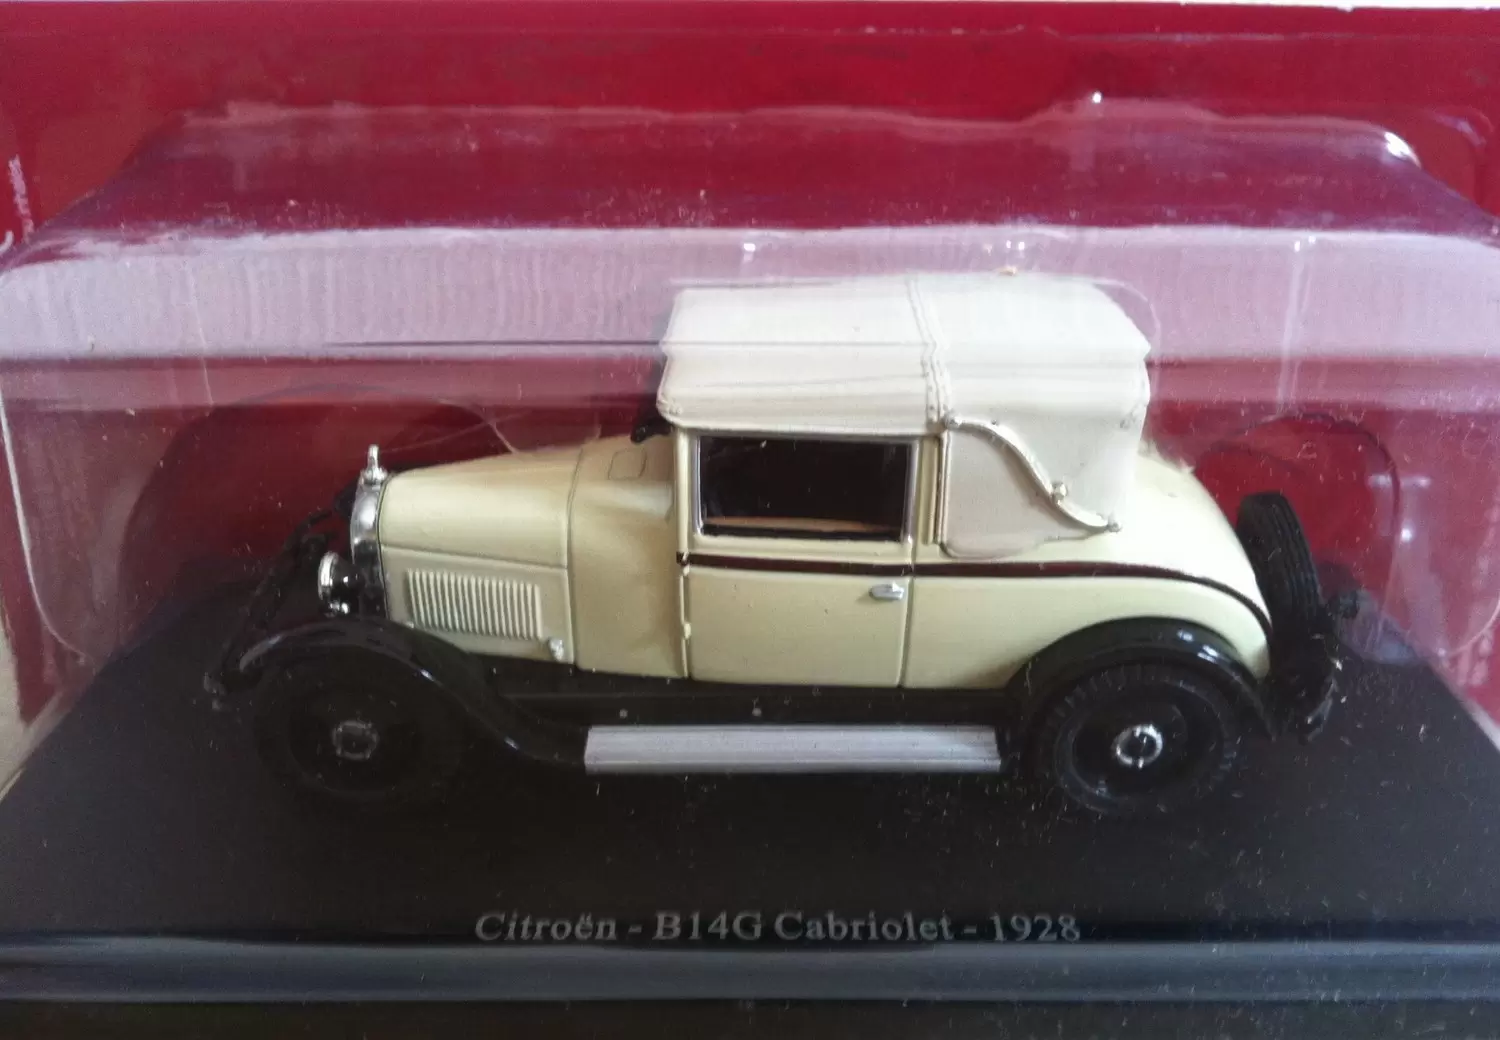 Passion Citroën - Éditions Atlas - La B14G Cabriolet de 1928